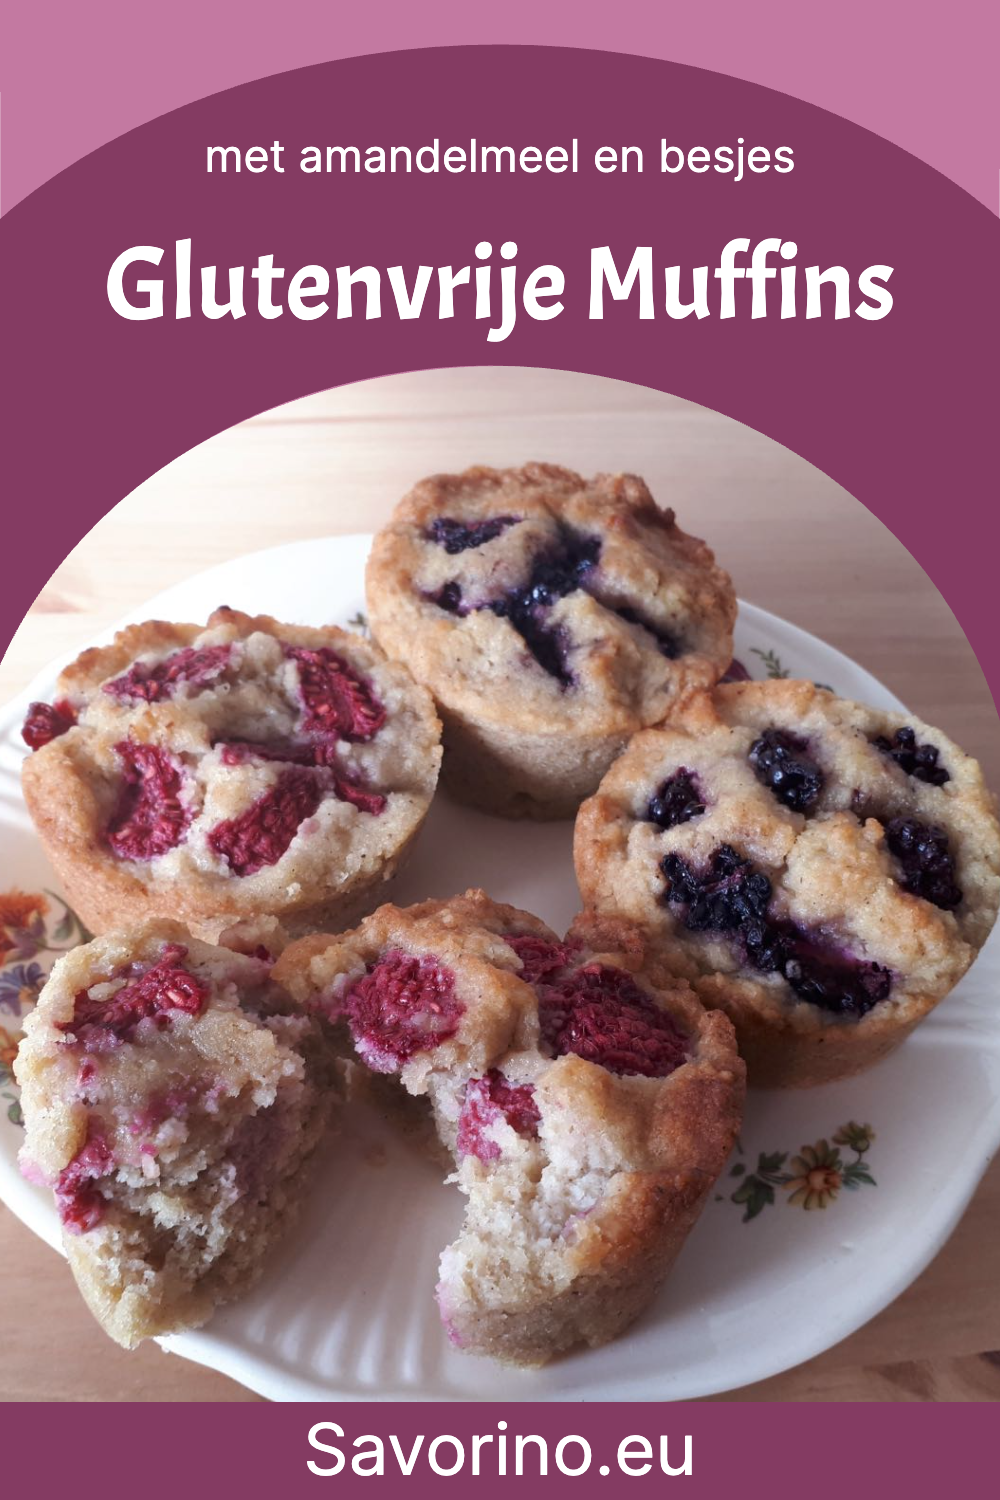 Glutenvrije Muffins met besjes erin verwerkt, op een wit bordje - Pinterest afbeelding